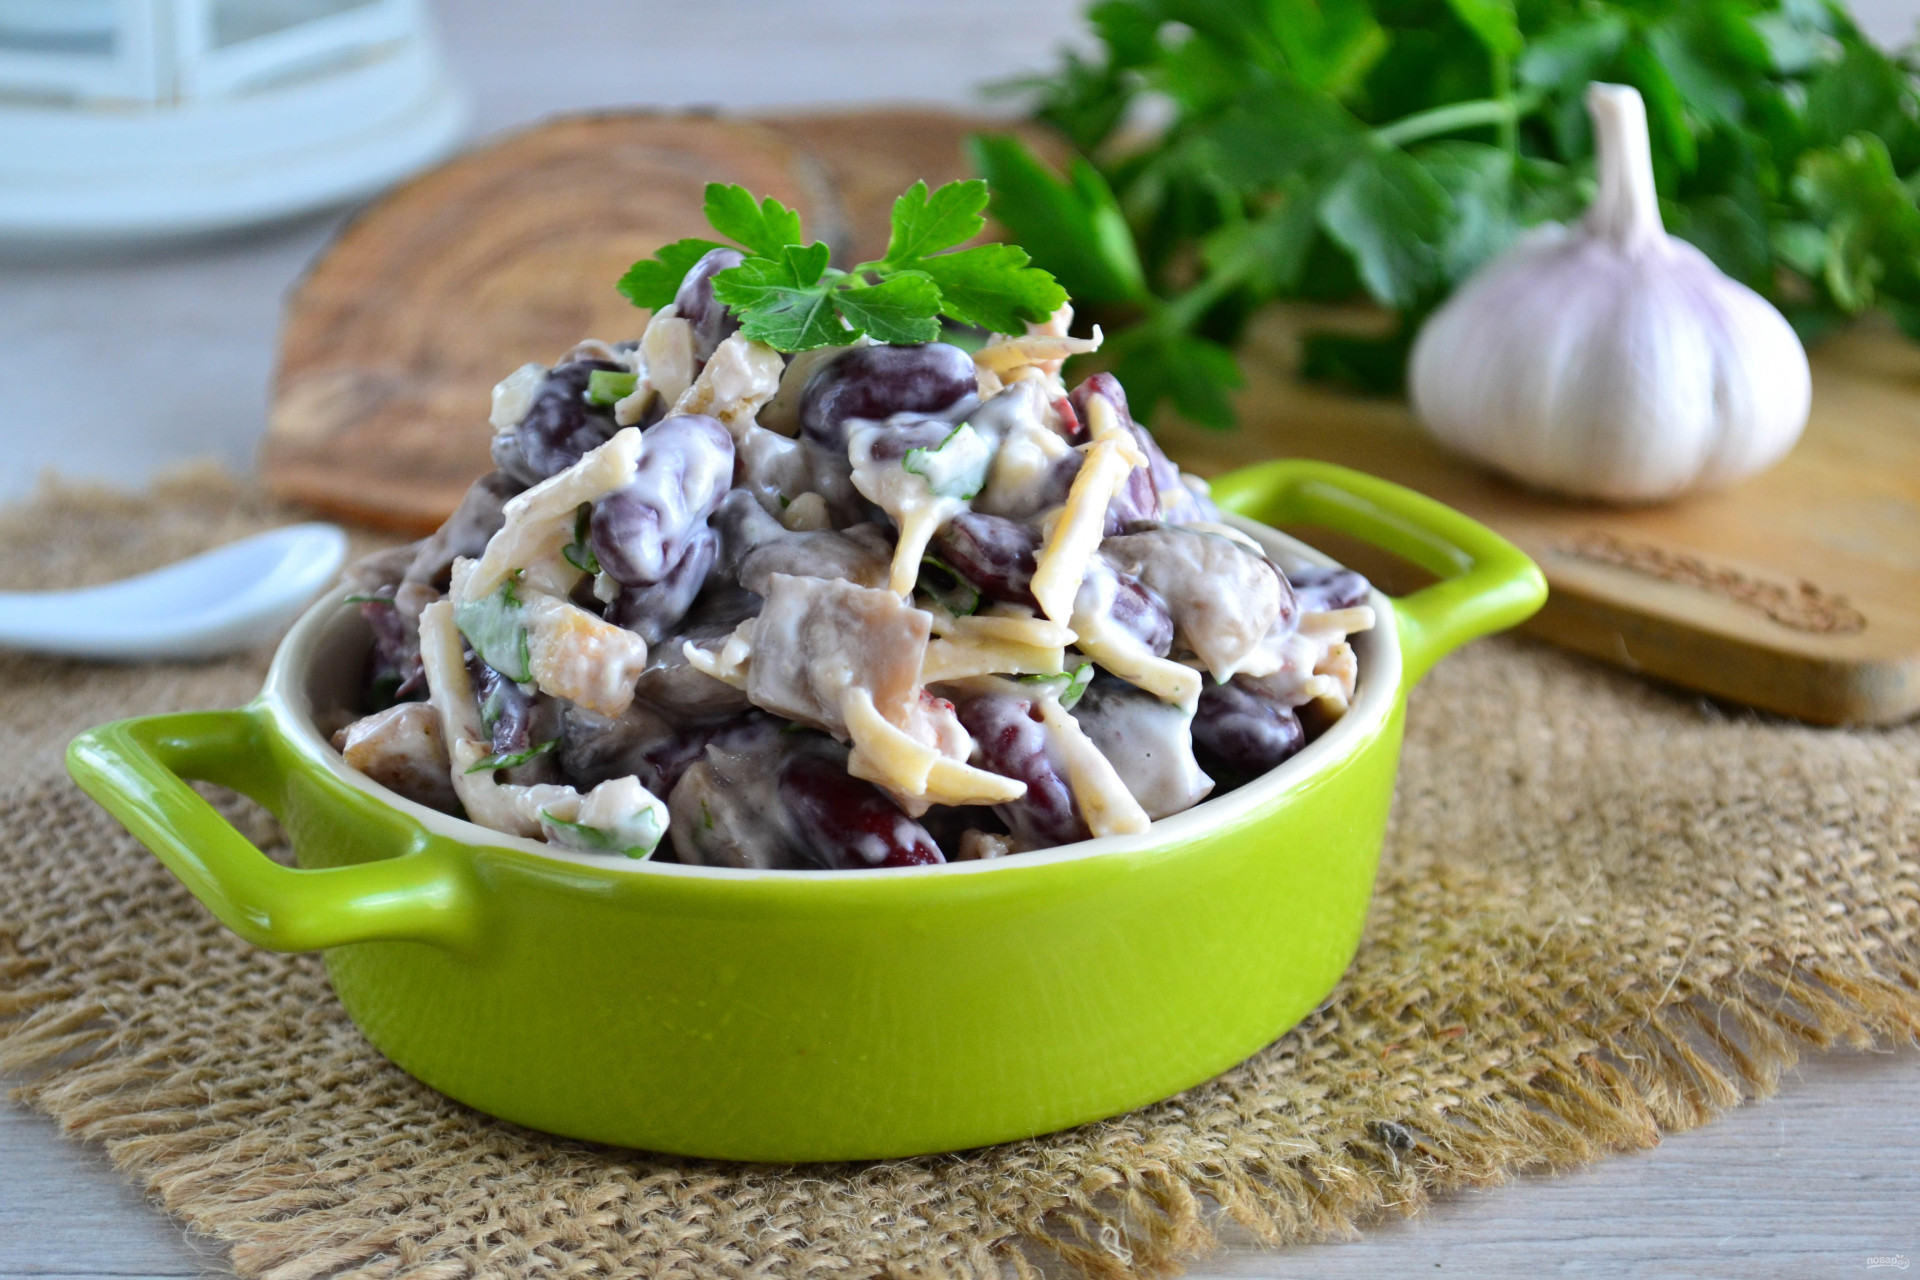 Салат с курицей и фасолью консервированной рецепт с фото пошагово